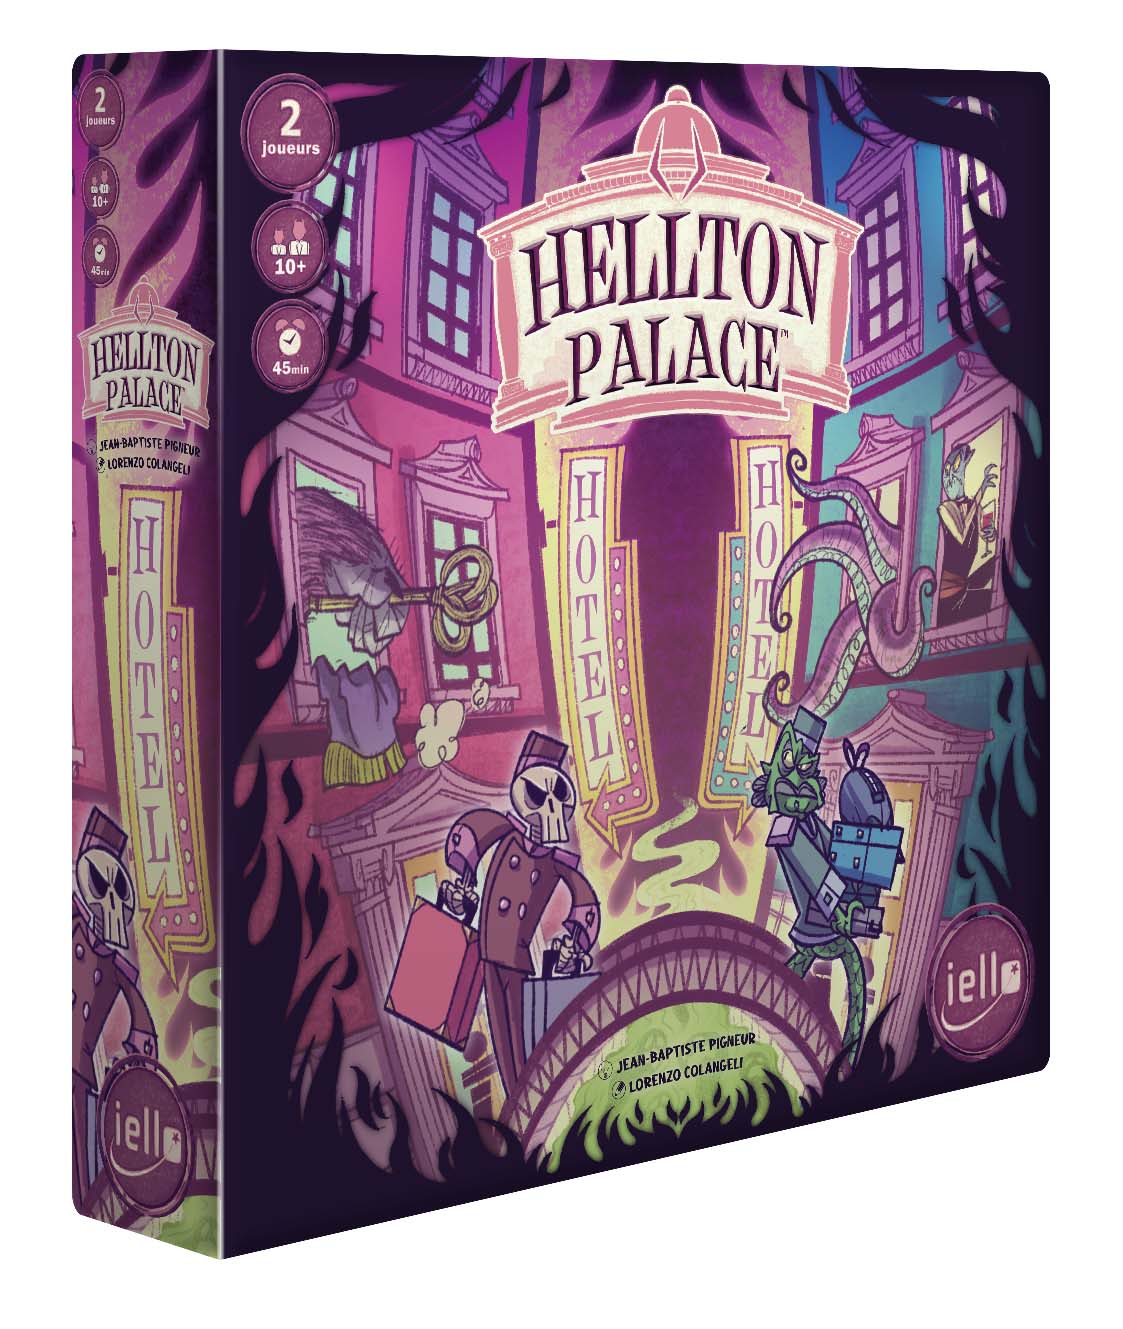 Boîte du jeu Hellton Palace (VF)